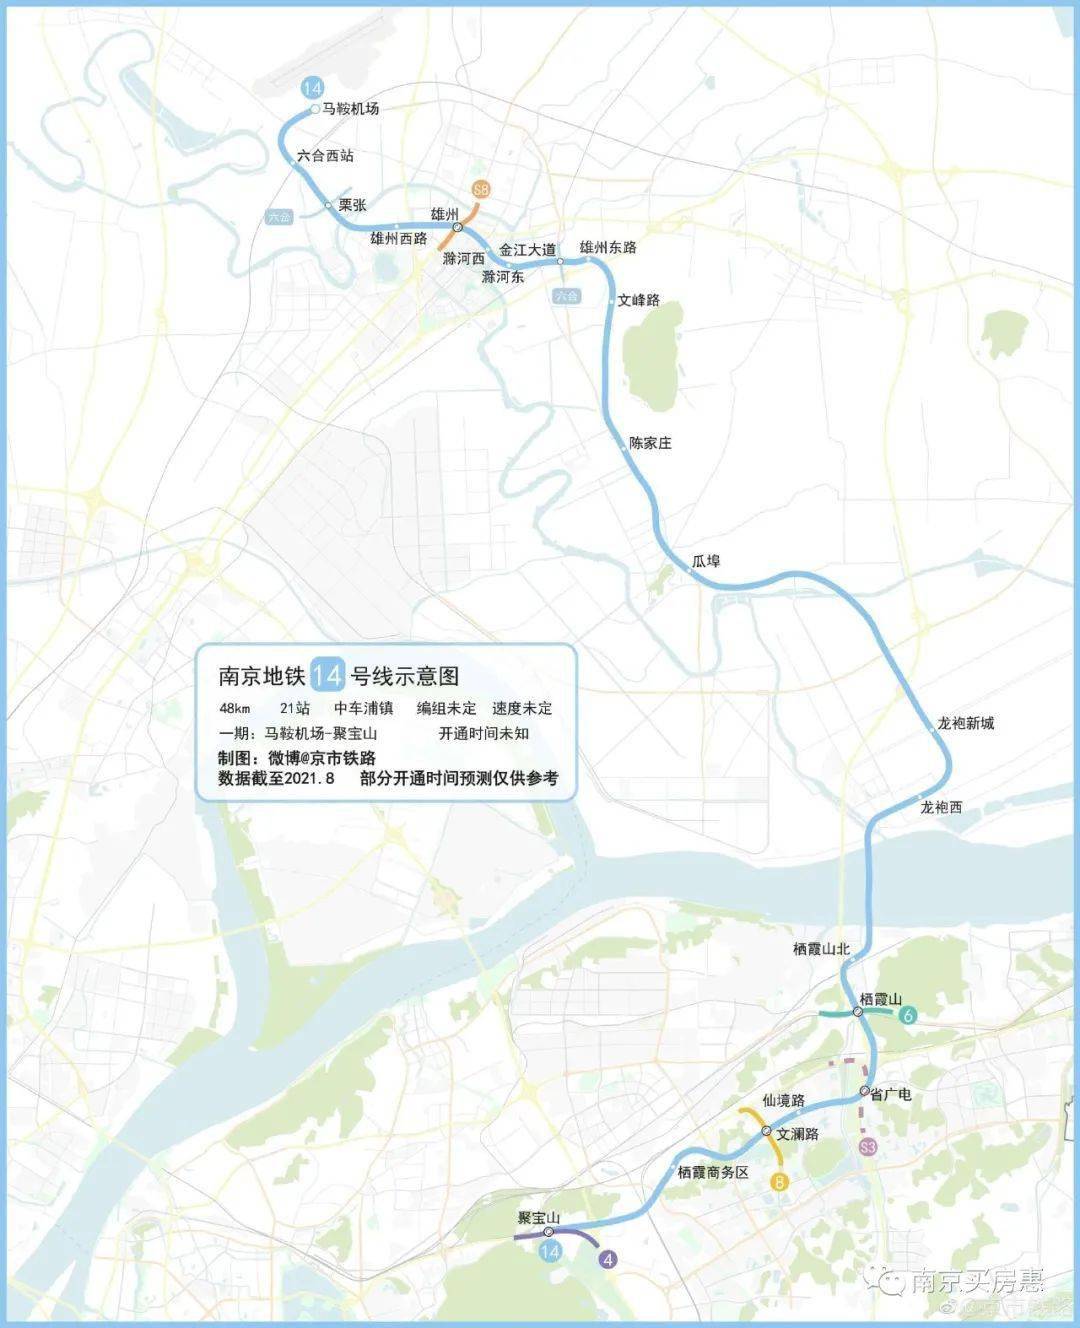 有微博博主,制作了南京地铁14号线示意图.